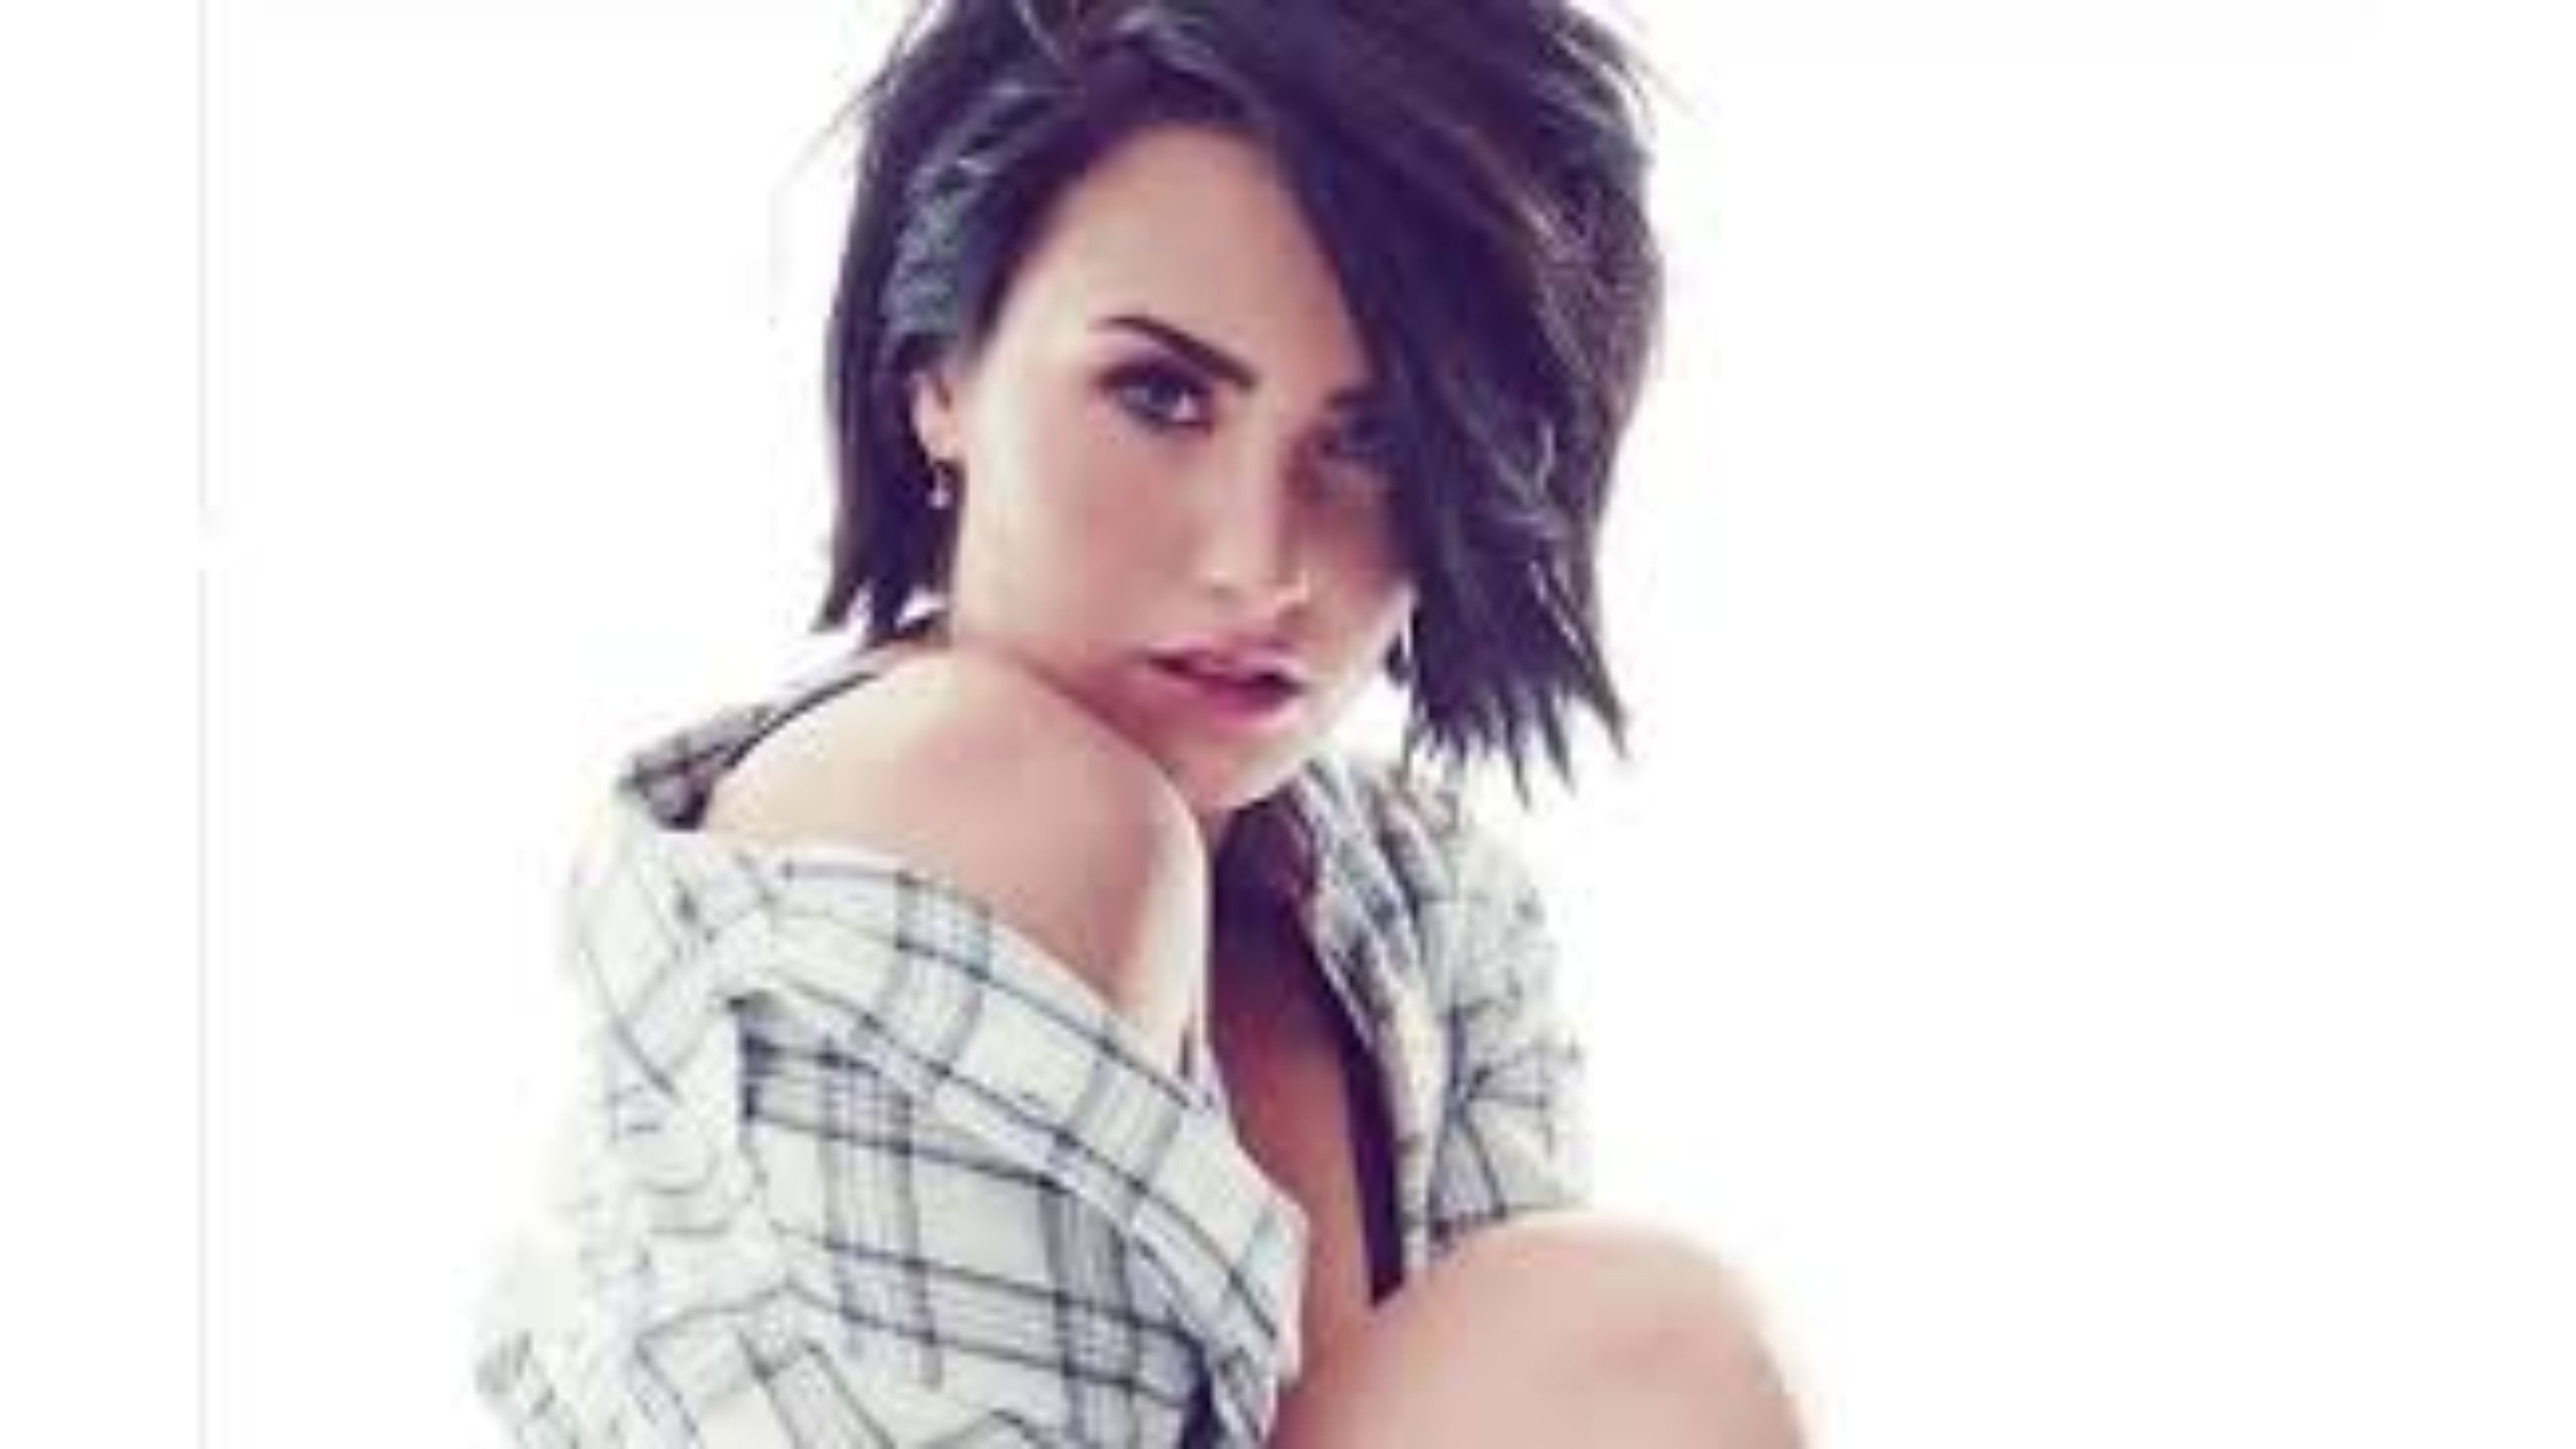 Demi Lovato Wallpapers